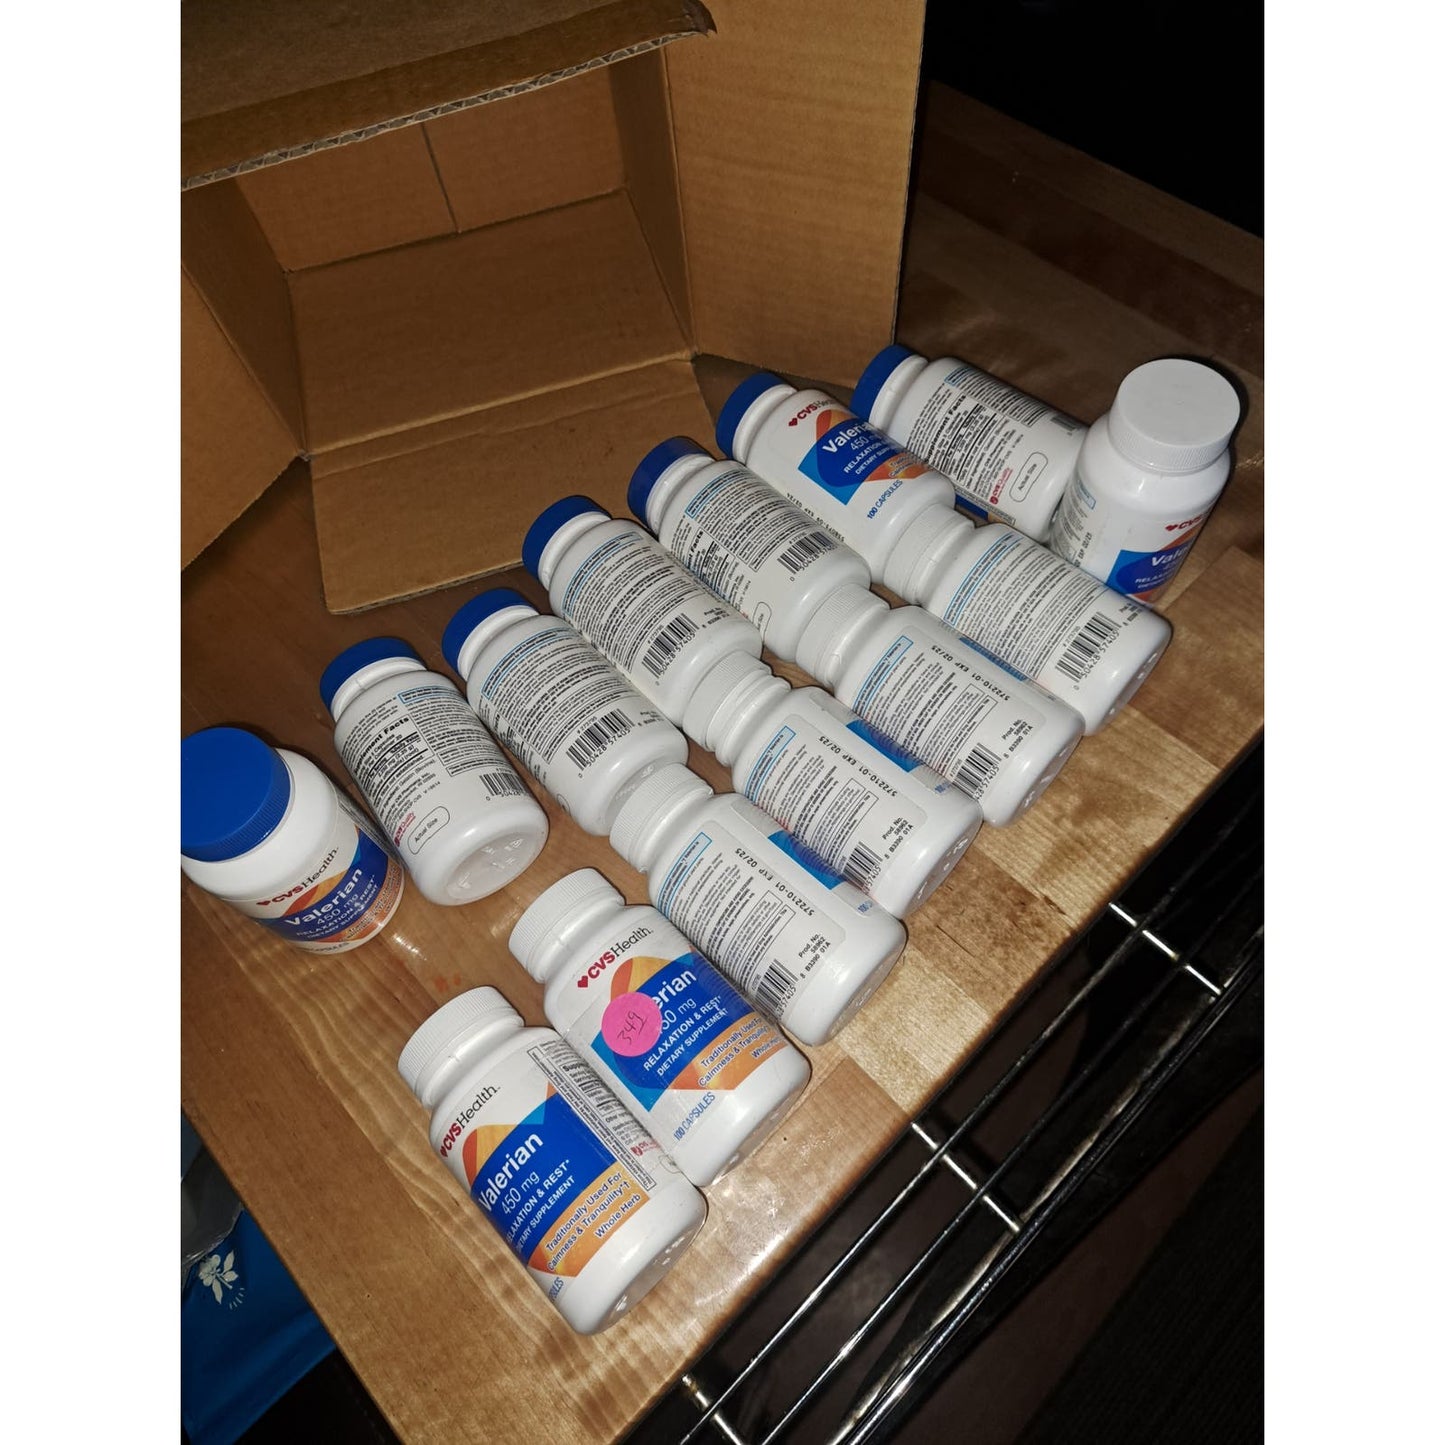 NEW Sealed Valerian LOT of 14 bottles CVS Health 450 Mg 100 Capsules per bottle